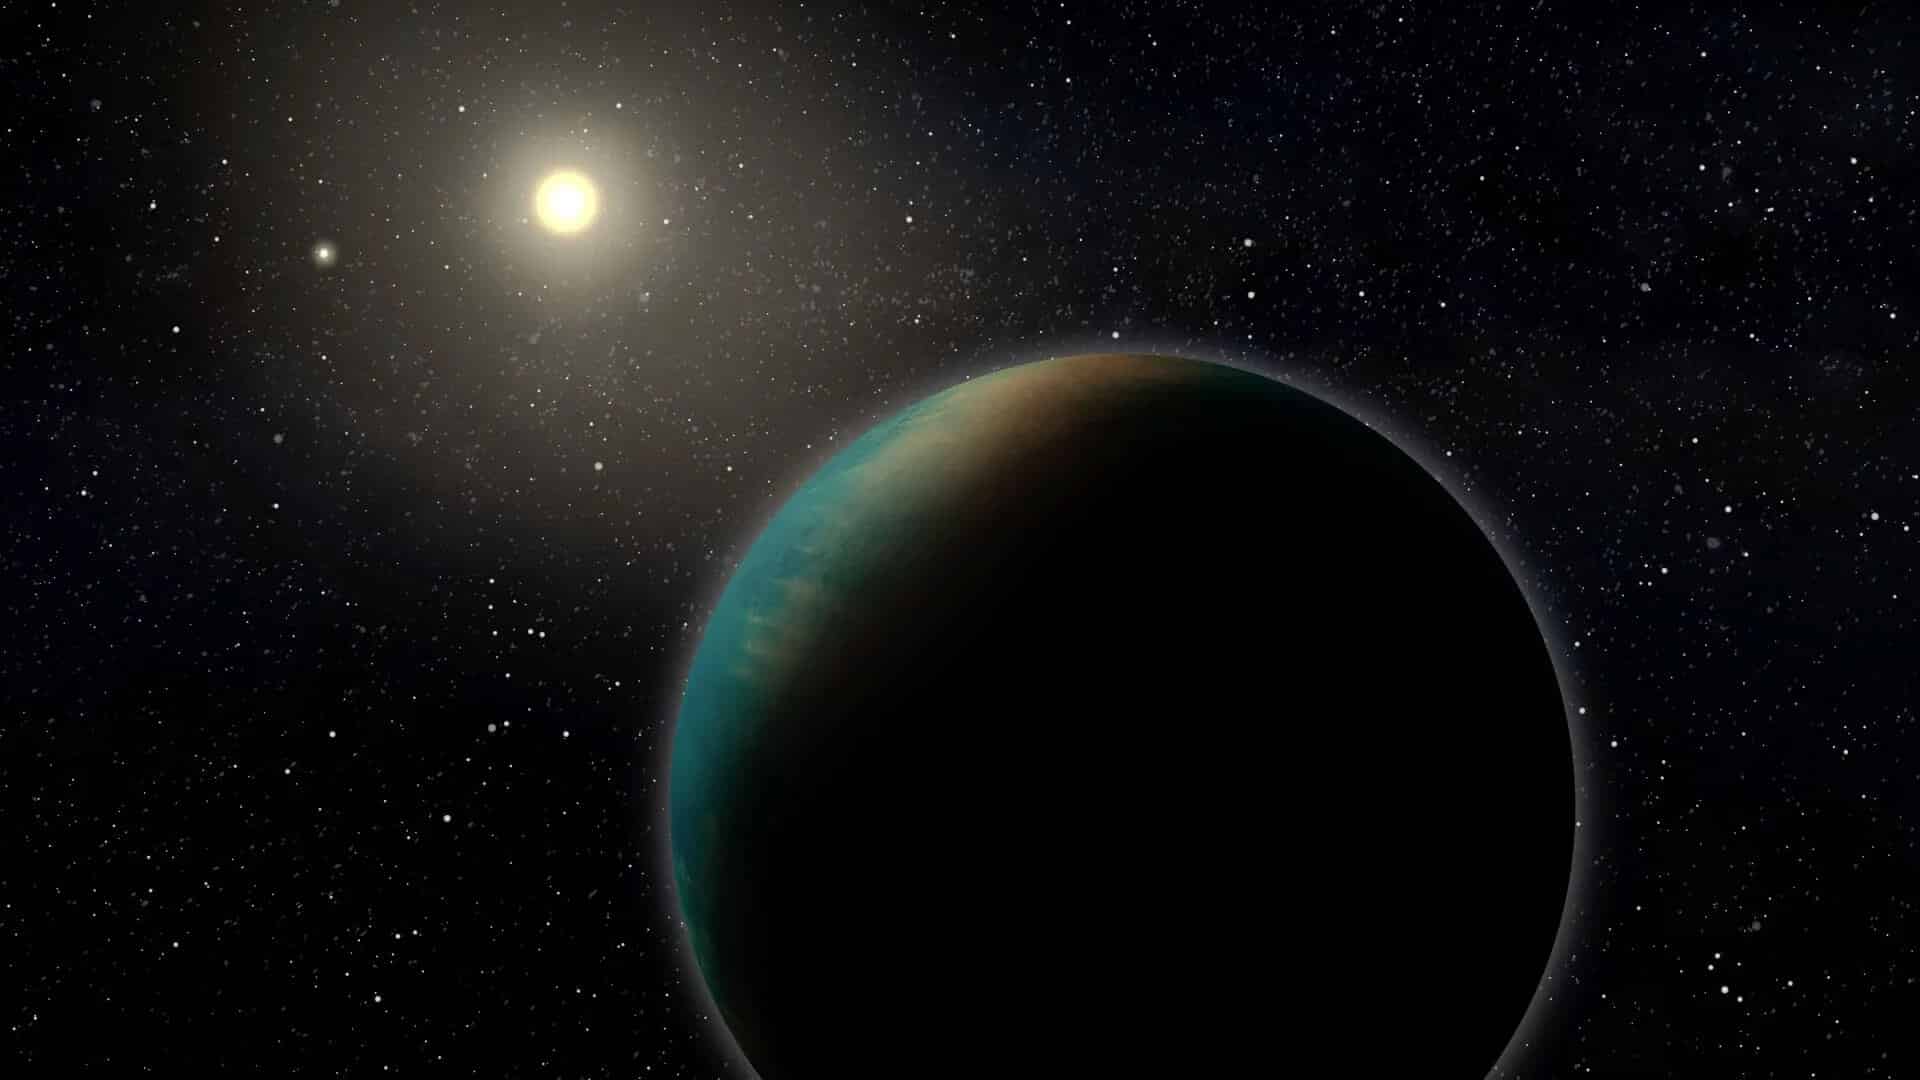 עיבוד אמנותי של האקסו-פלנטה TOI-1452 b, כוכב לכת קטן שעשוי להיות מכוסה כולו באוקיינוס עמוק. קרדיט: בנואה גוג'ון, אוניברסיטת מונטריאול